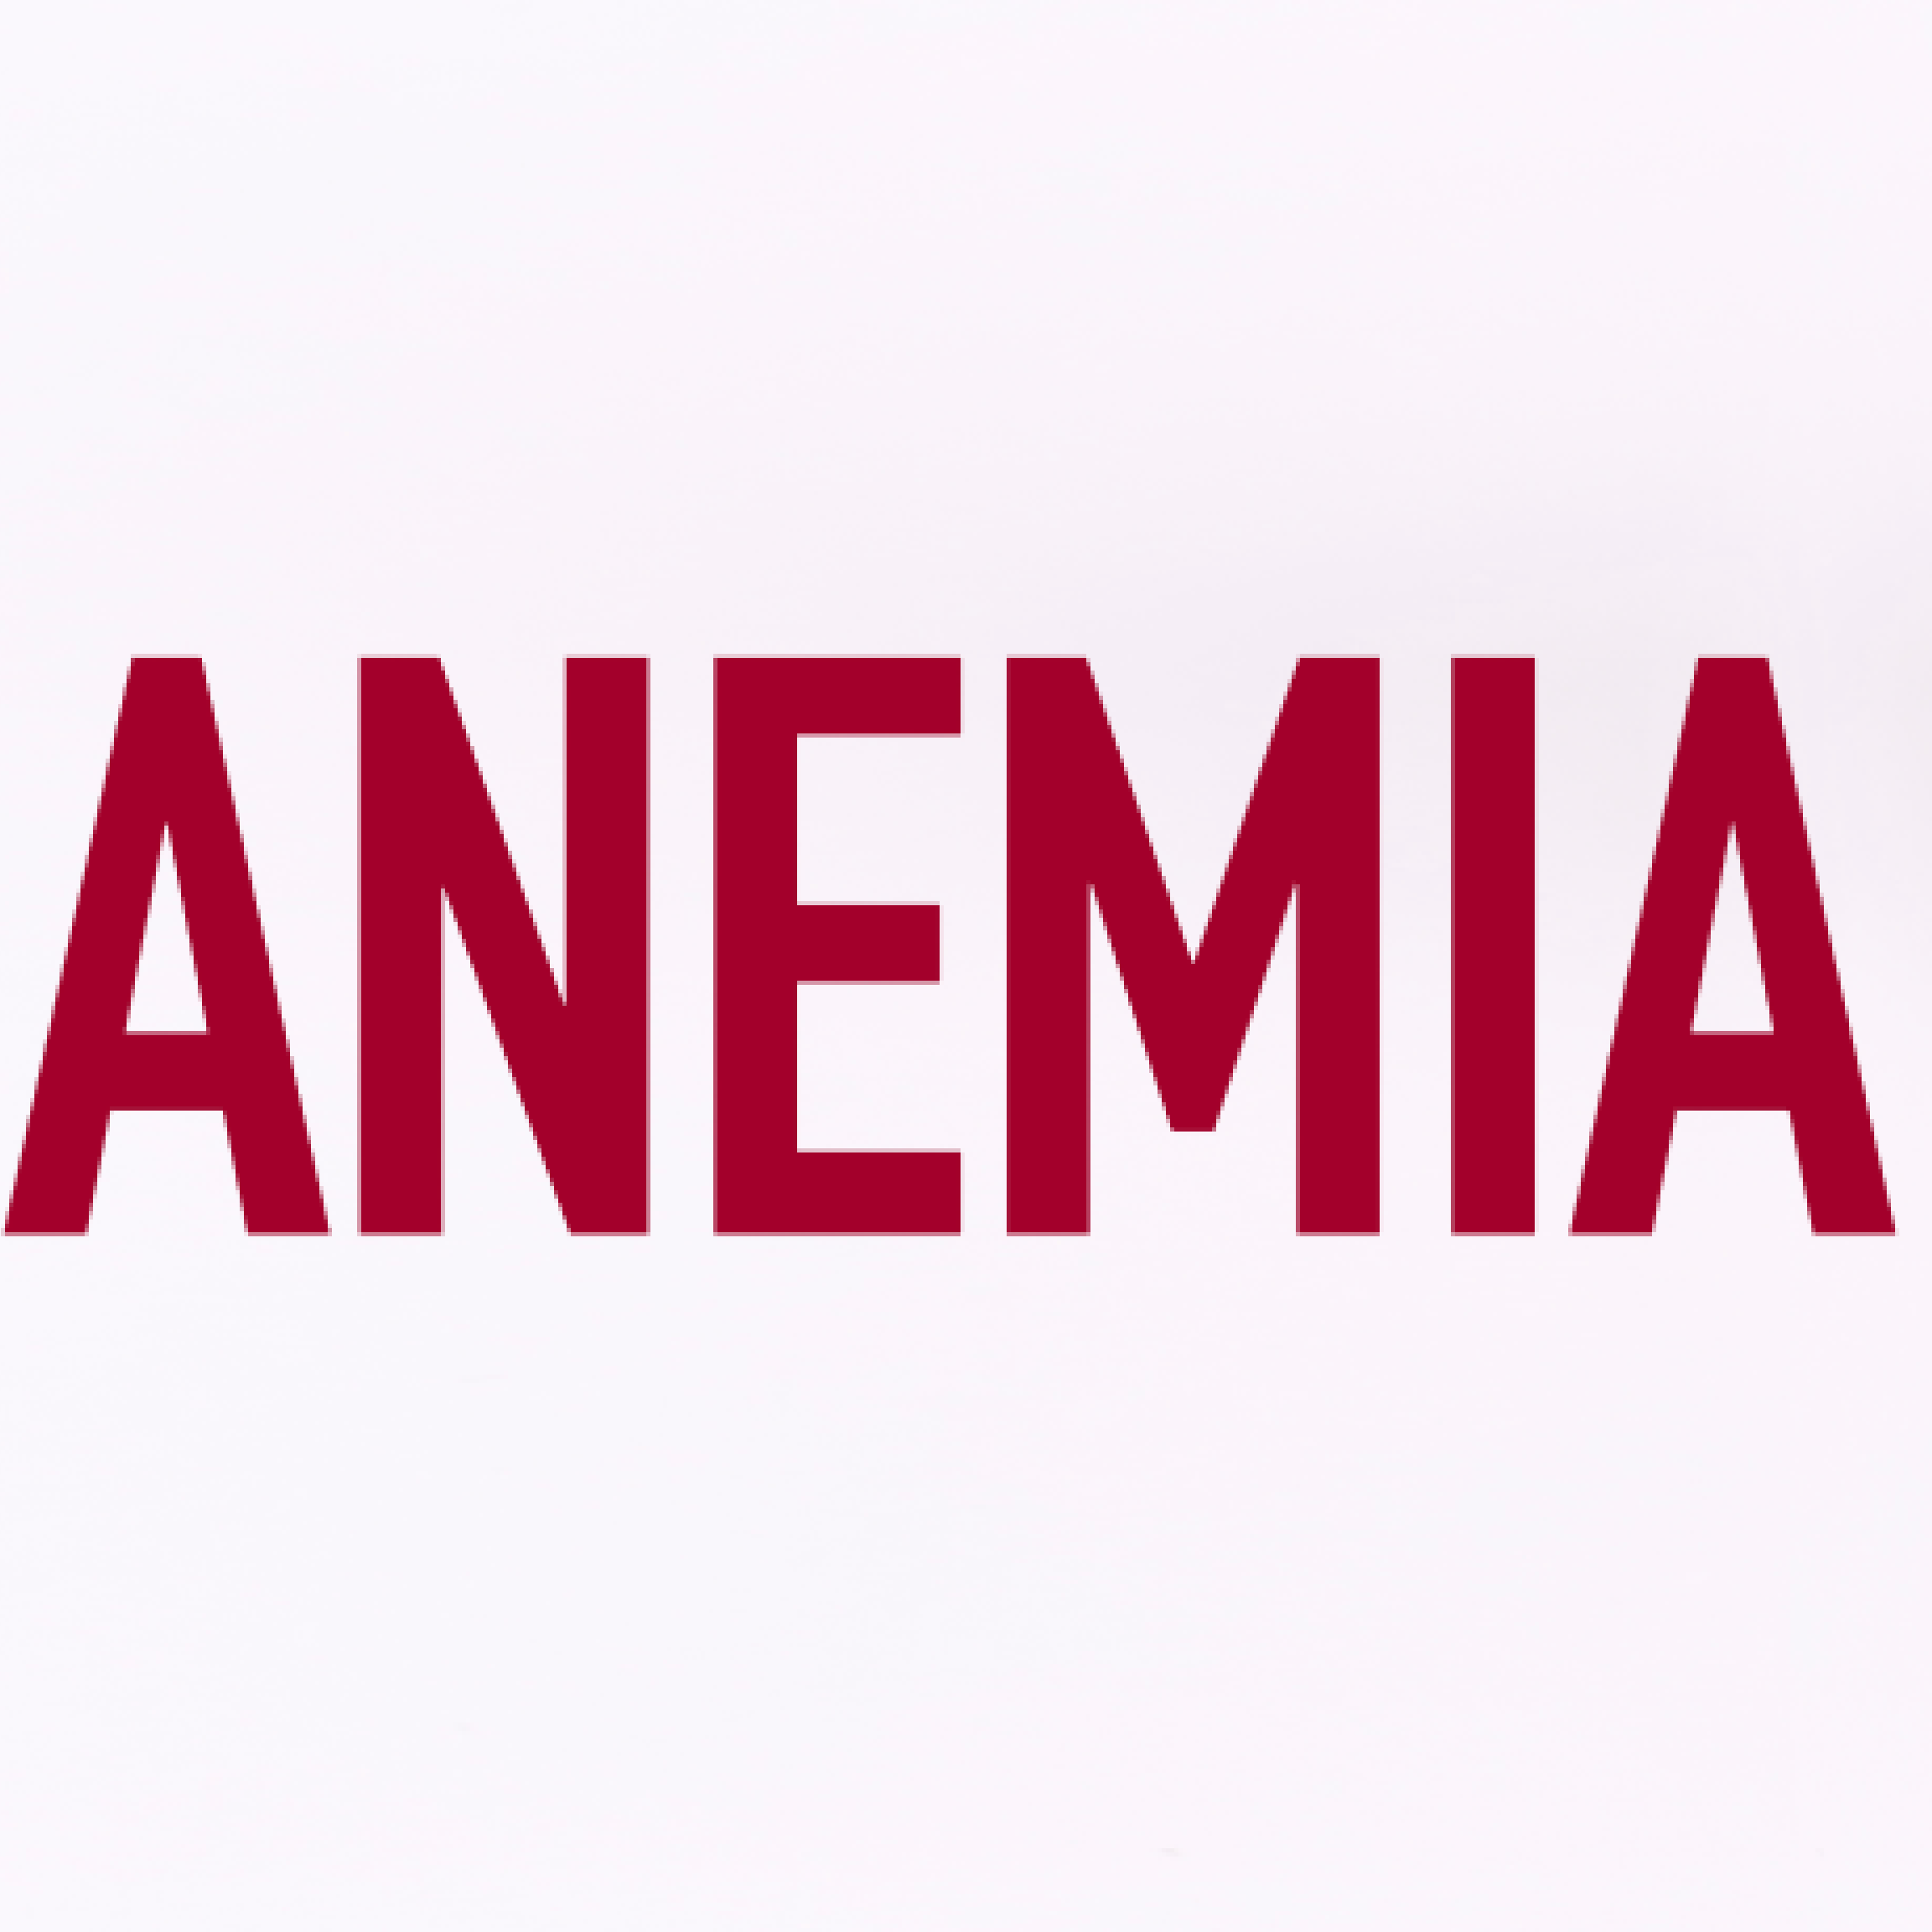 Czerwony napis anemia na białym tle